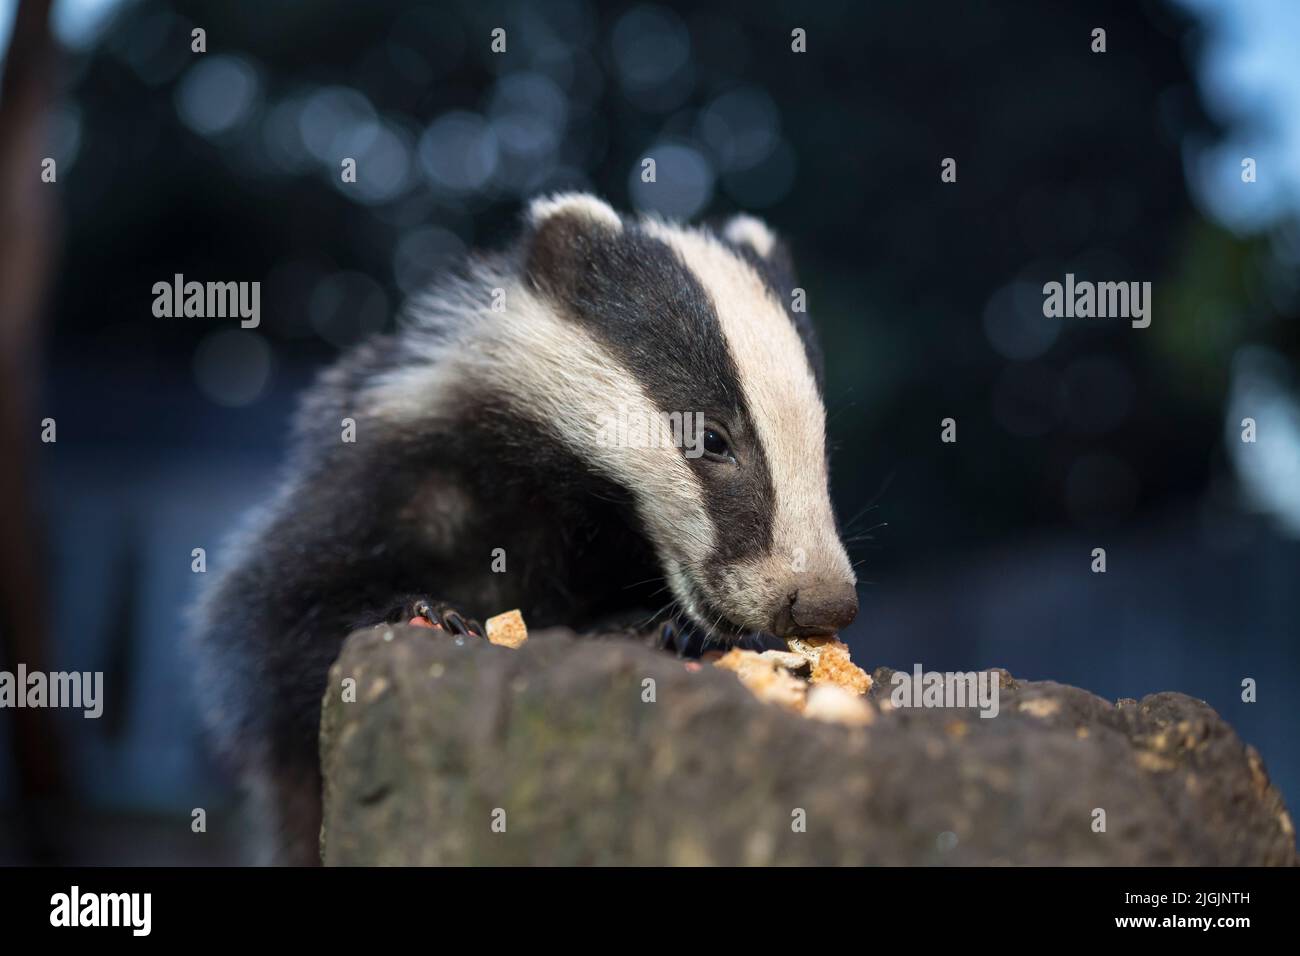 Nahaufnahme eines wilden, Baby UK Dachs Junge (Meles meles) isoliert im Freien in städtischen Garten Besuch am Abend zu füttern. Stockfoto